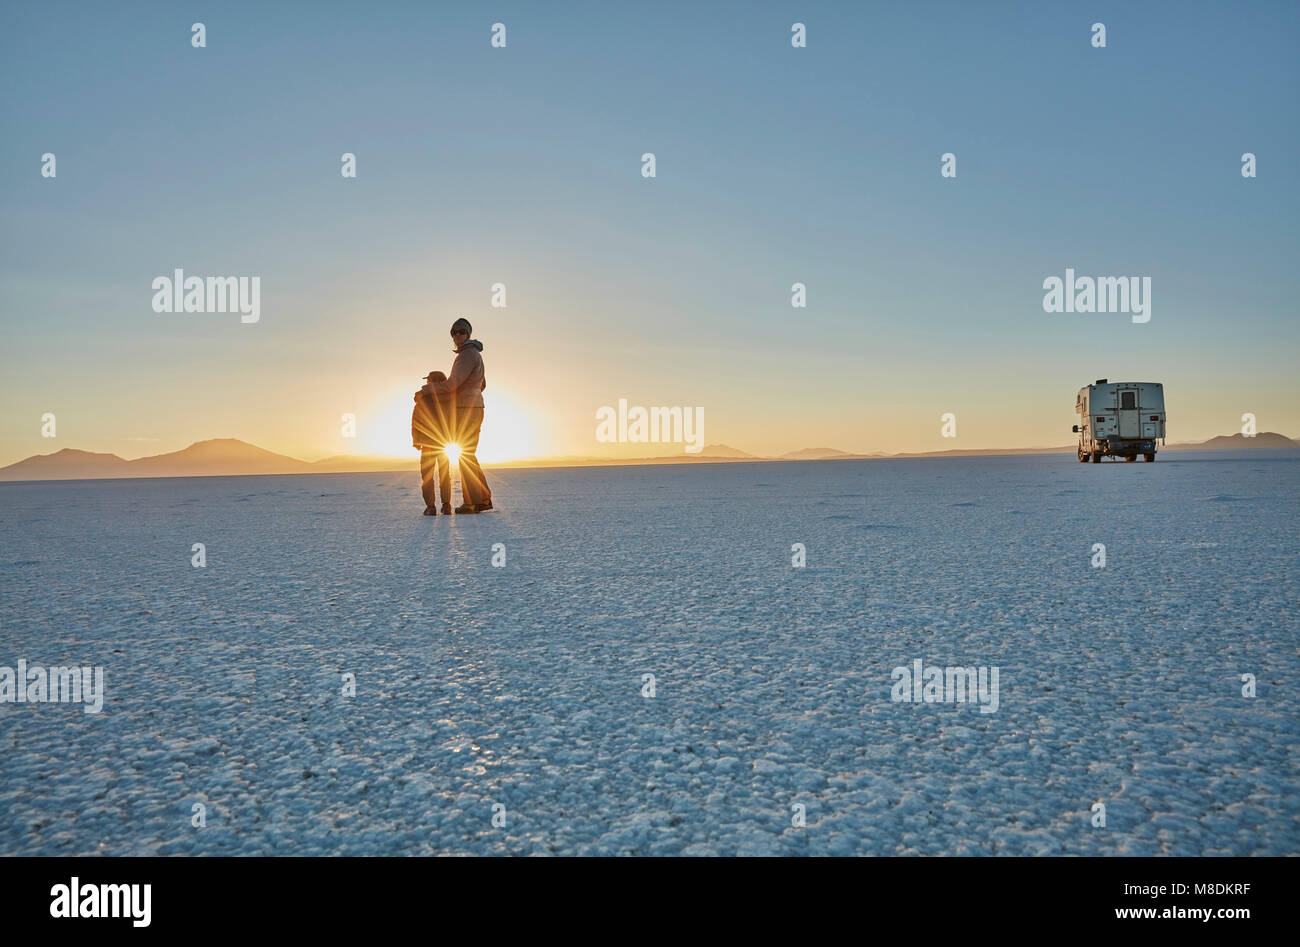 La mère et le fils debout sur Salt Flats, looking at view, Salar de Uyuni, Uyuni, Oruro, Bolivie, Amérique du Sud Banque D'Images